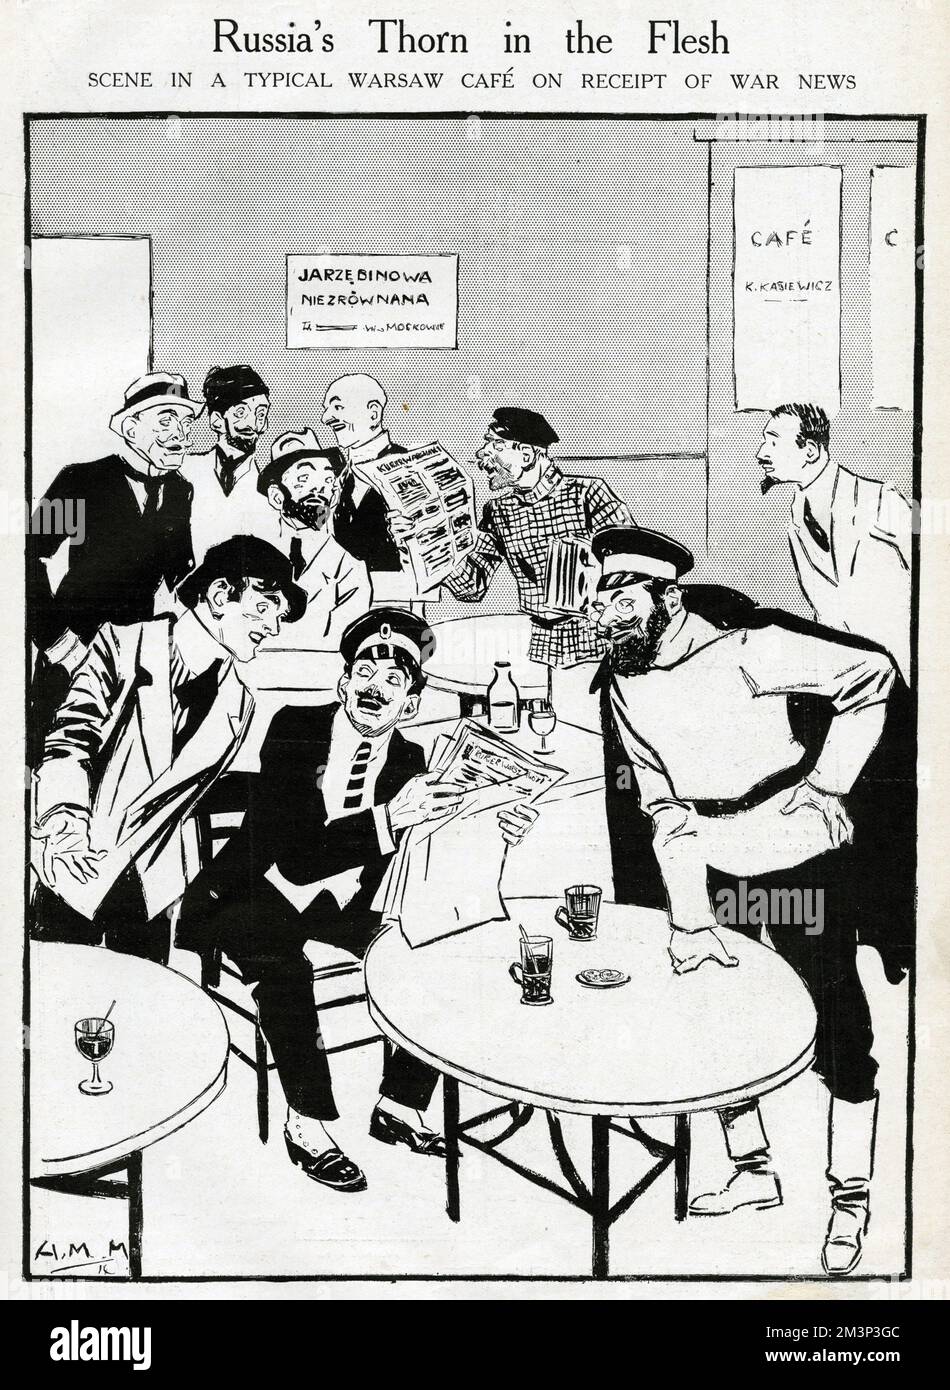 Caricature, Thorn de Russie en chair, montrant une scène dans un café typique de Varsovie à la réception des nouvelles de guerre. Date : août 1914 Banque D'Images